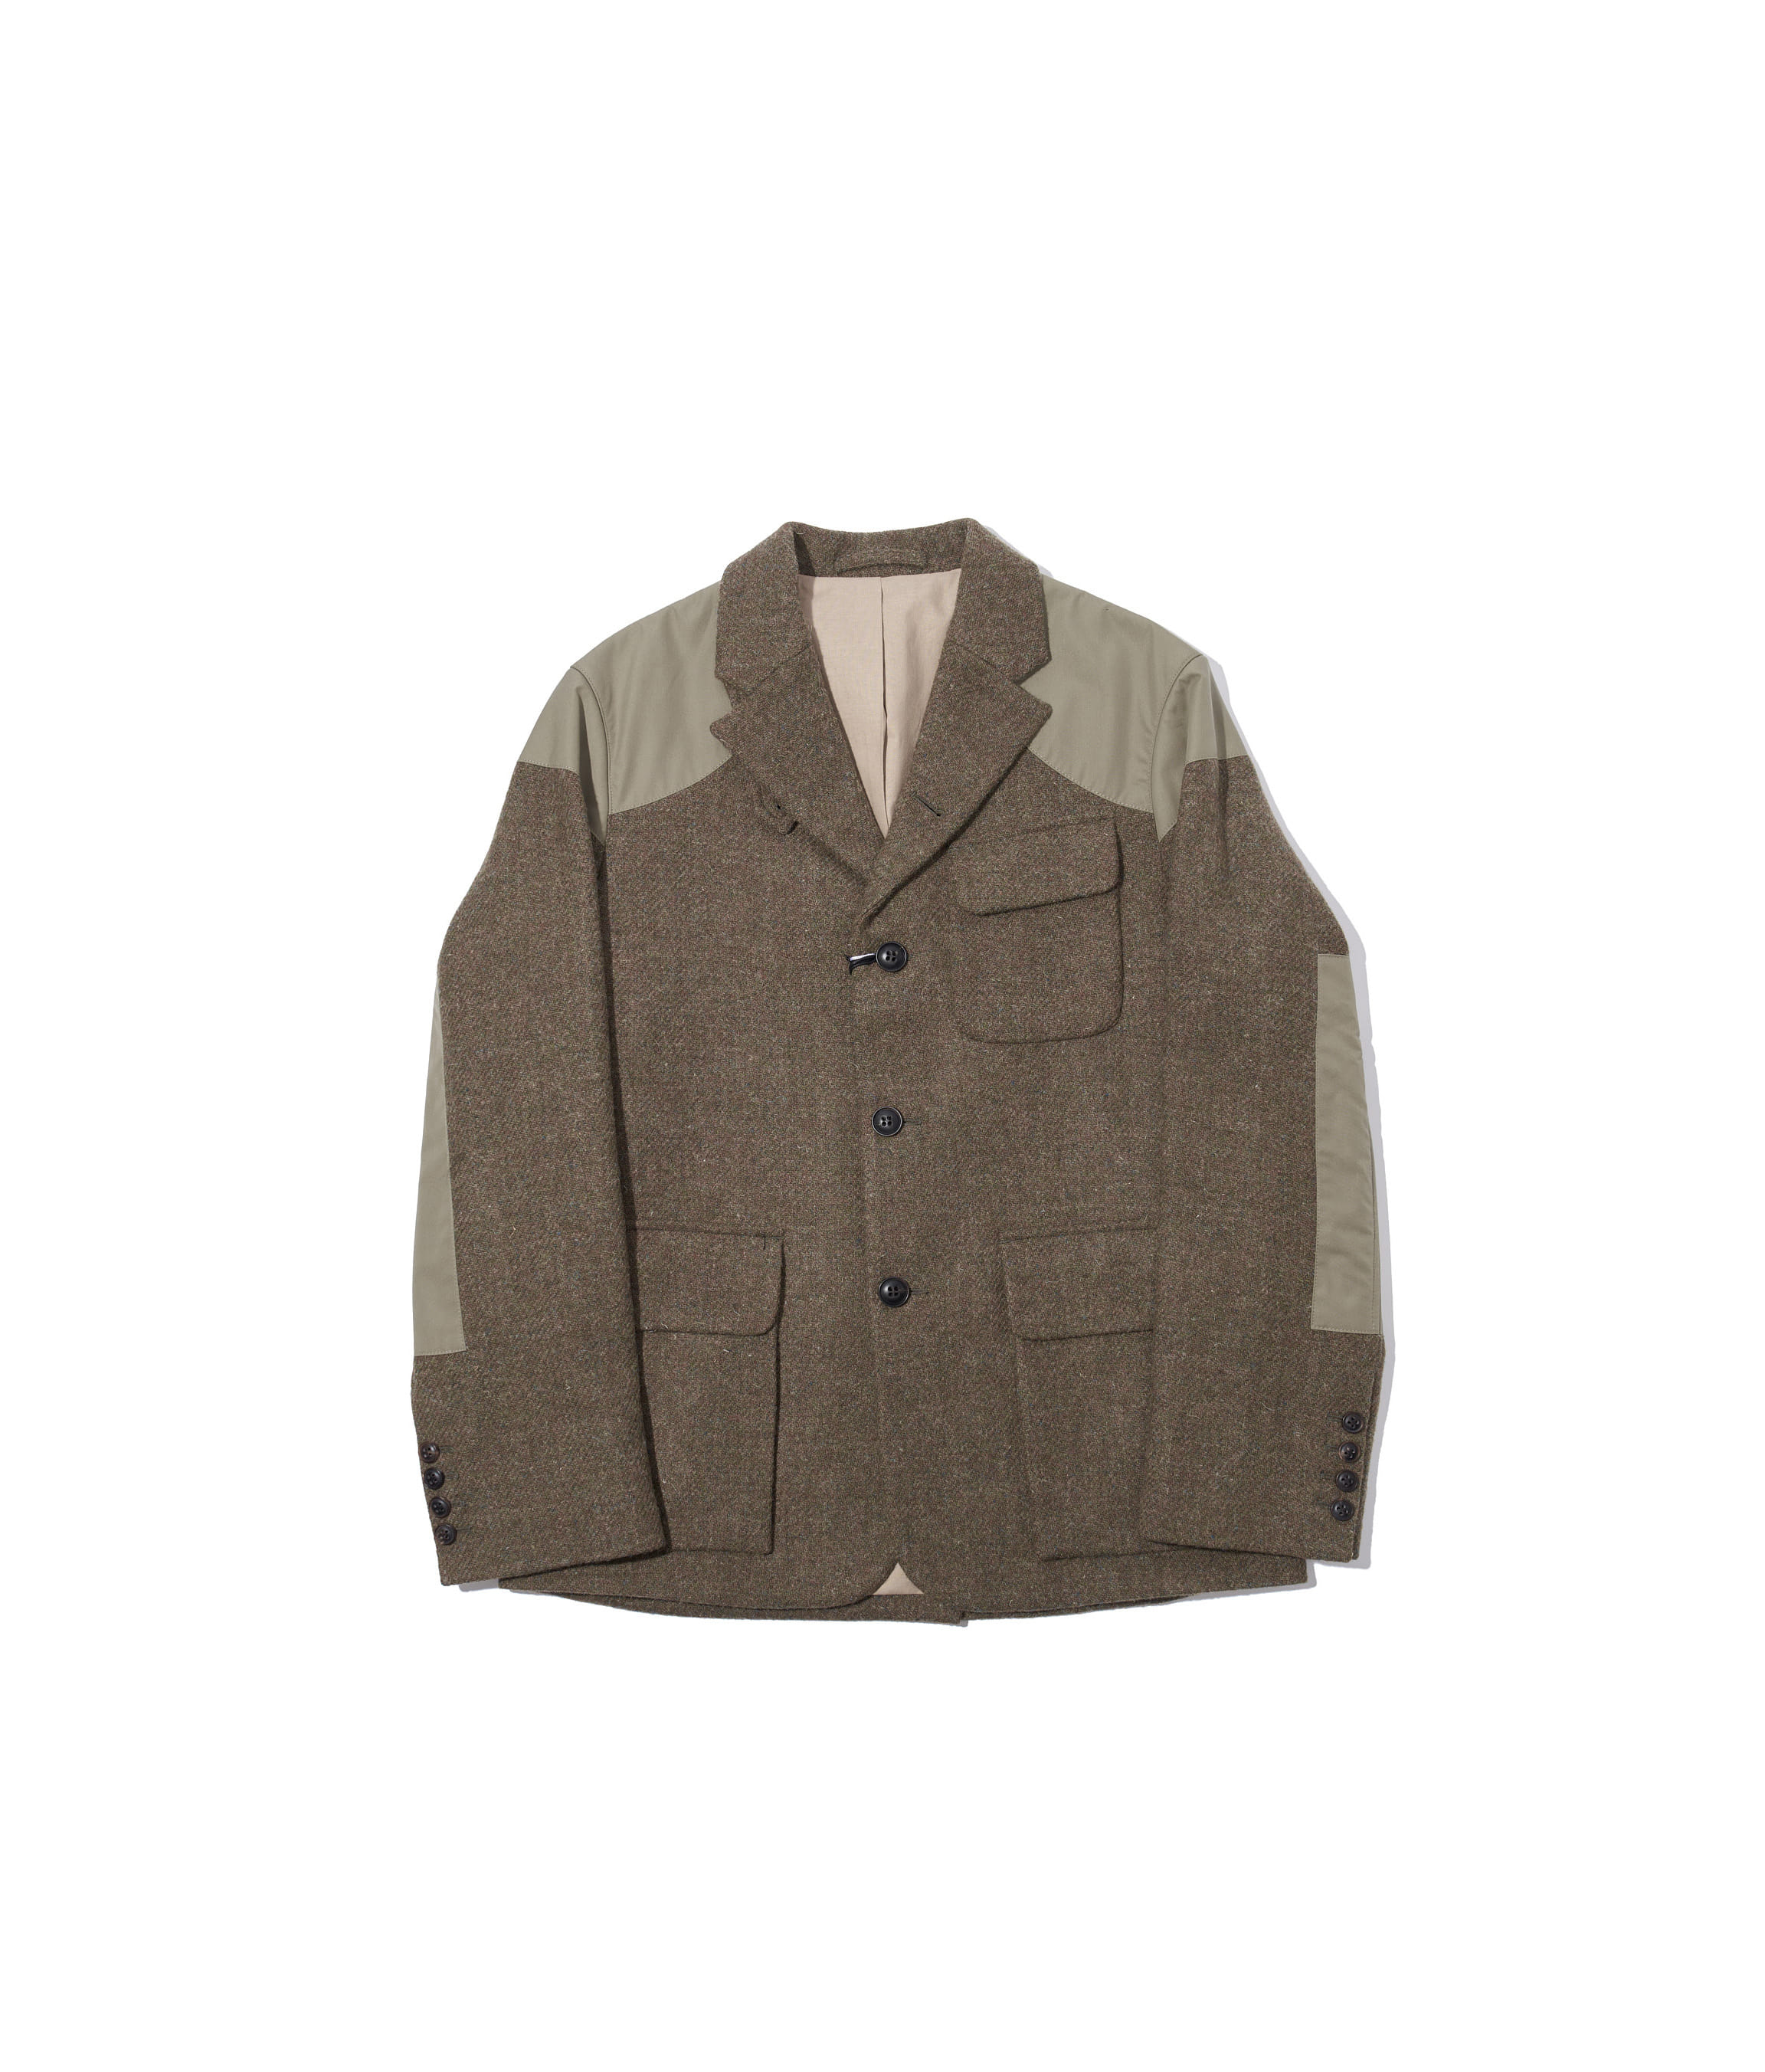 Tenzing Jacket Harris Tweed Ventile Army